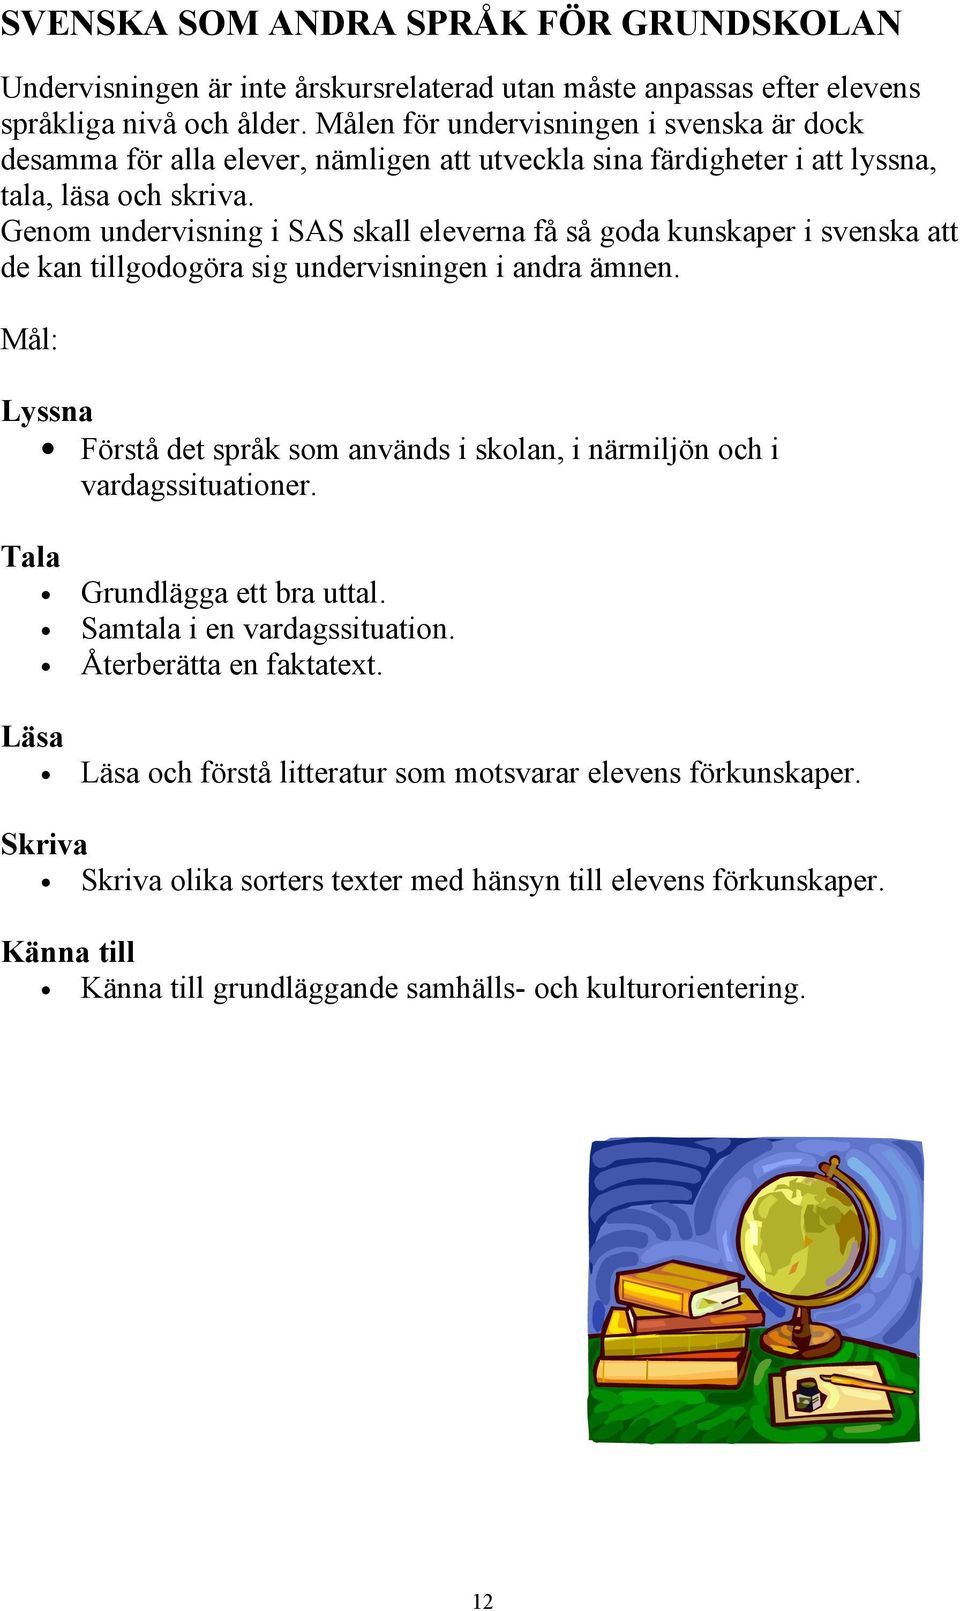 Genom undervisning i SAS skall eleverna få så goda kunskaper i svenska att de kan tillgodogöra sig undervisningen i andra ämnen.